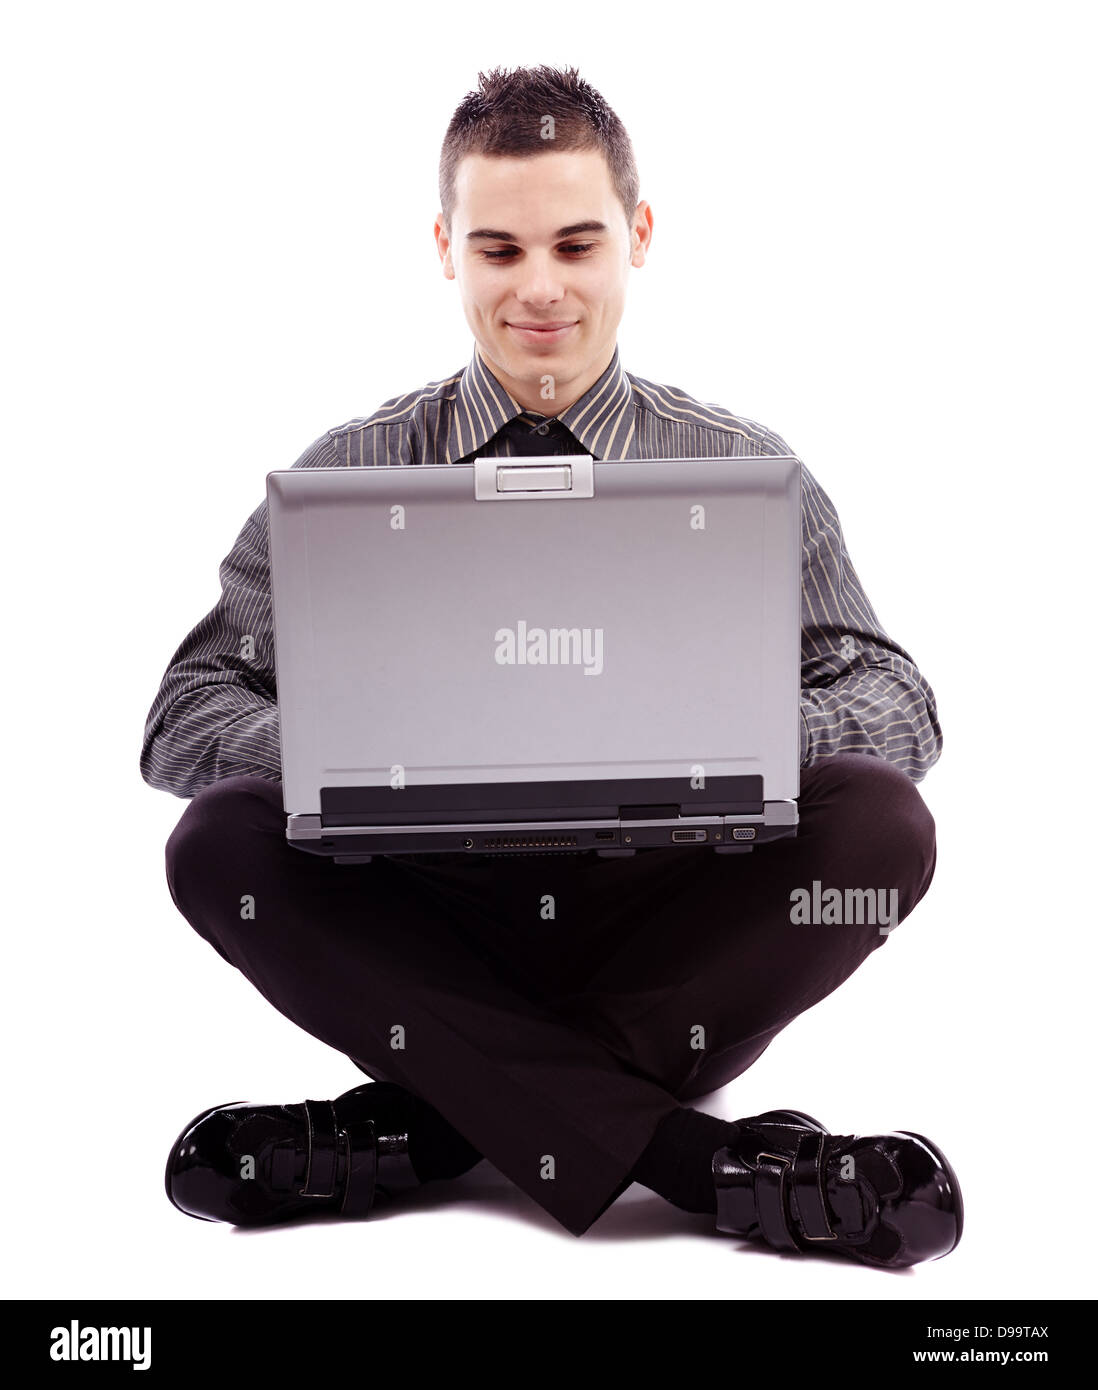 Longueur totale de pose assis sur le plancher et à écrire sur son ordinateur portable, isolé sur fond blanc Banque D'Images